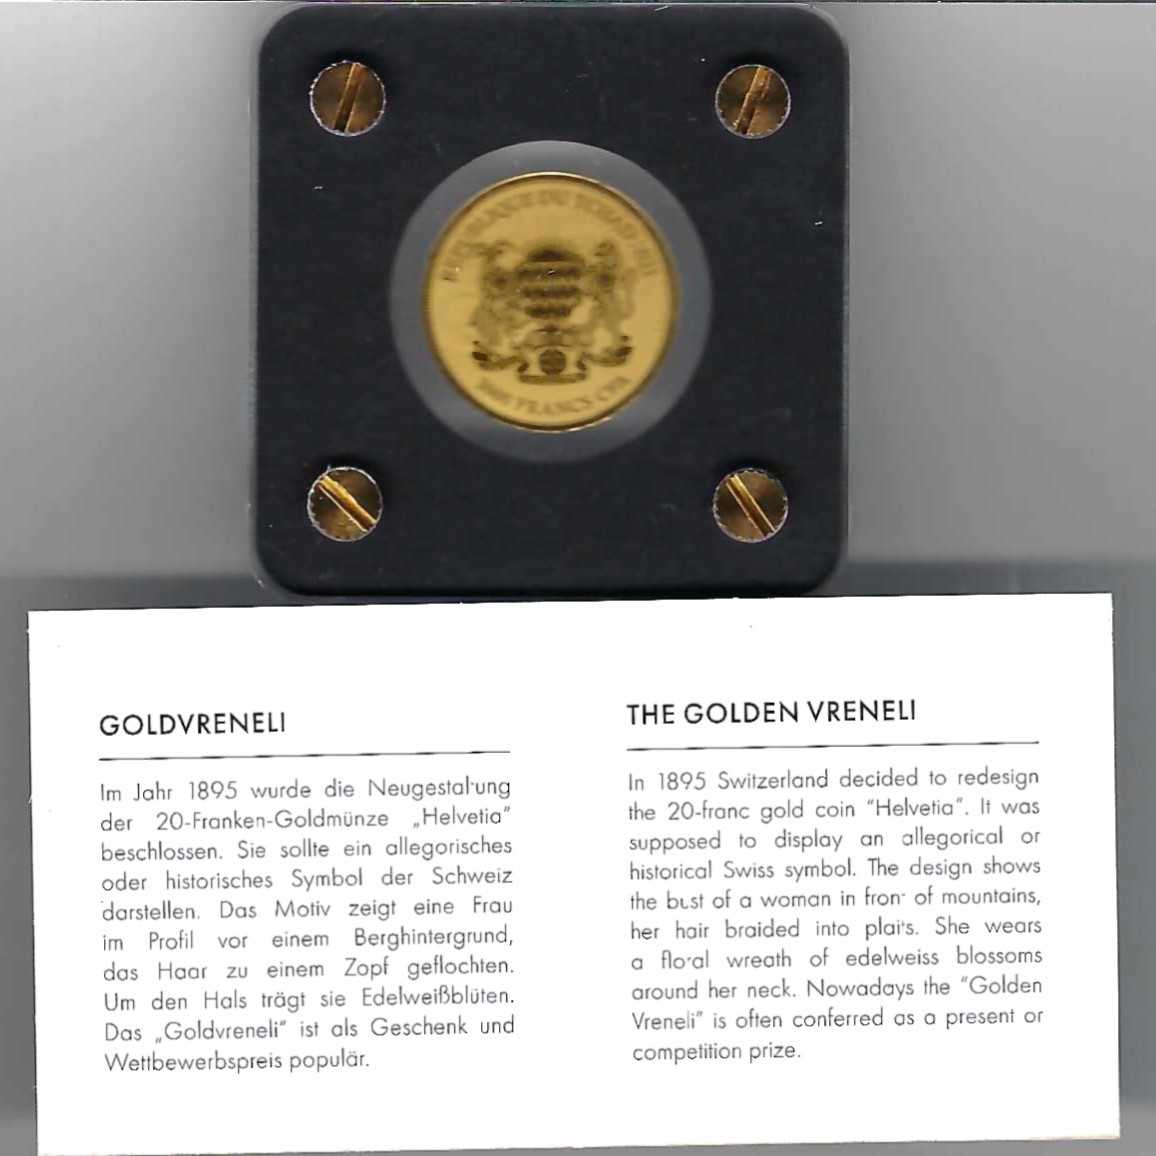  Goldbarren Tschad 3000 Francs 2021 Feingold 999 1/500 oz Golden Gate Koblenz Frank Maurer AB 738   